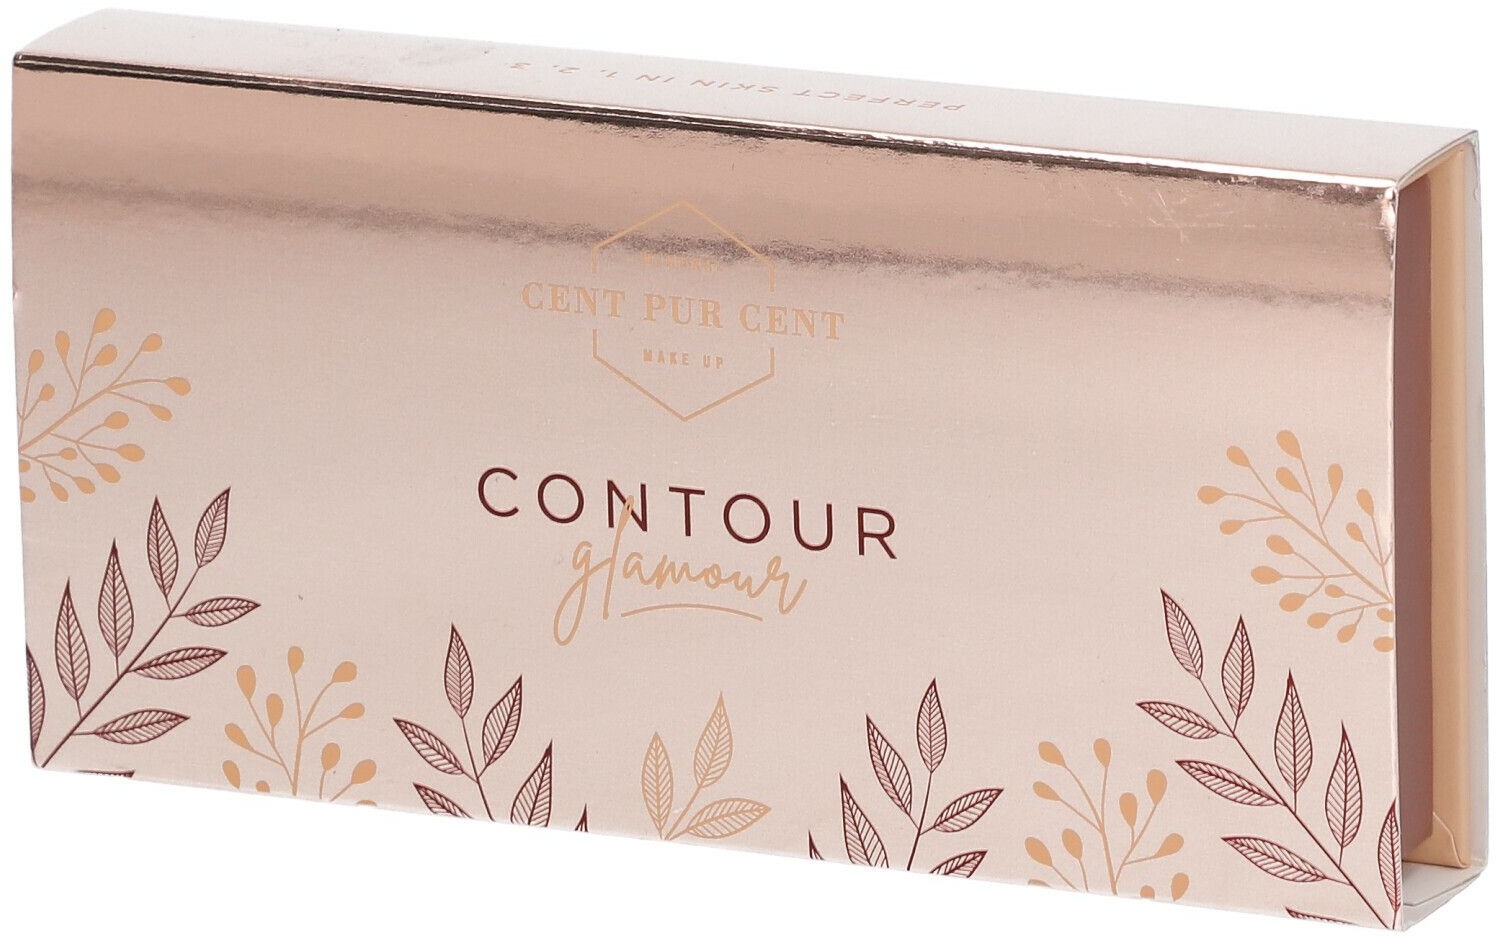 Cent Pur Cent Contour Glamour Edition 1.0 1 pc(s) fond(s) de teint